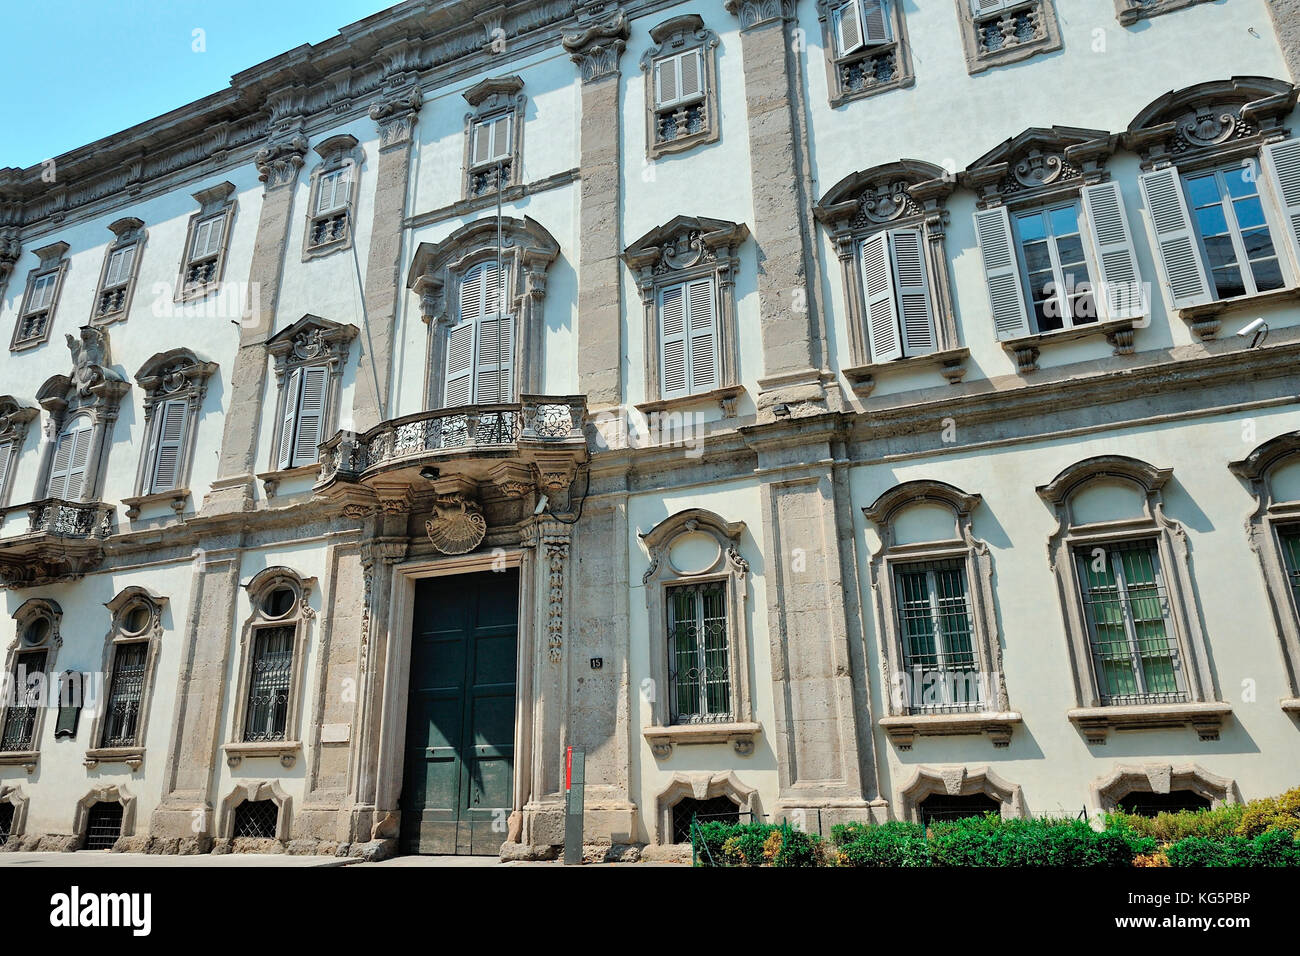 Palazzo cusani, palace edificio histórico en el distrito de Brera, Milán, via Brera 13, Italia Foto de stock